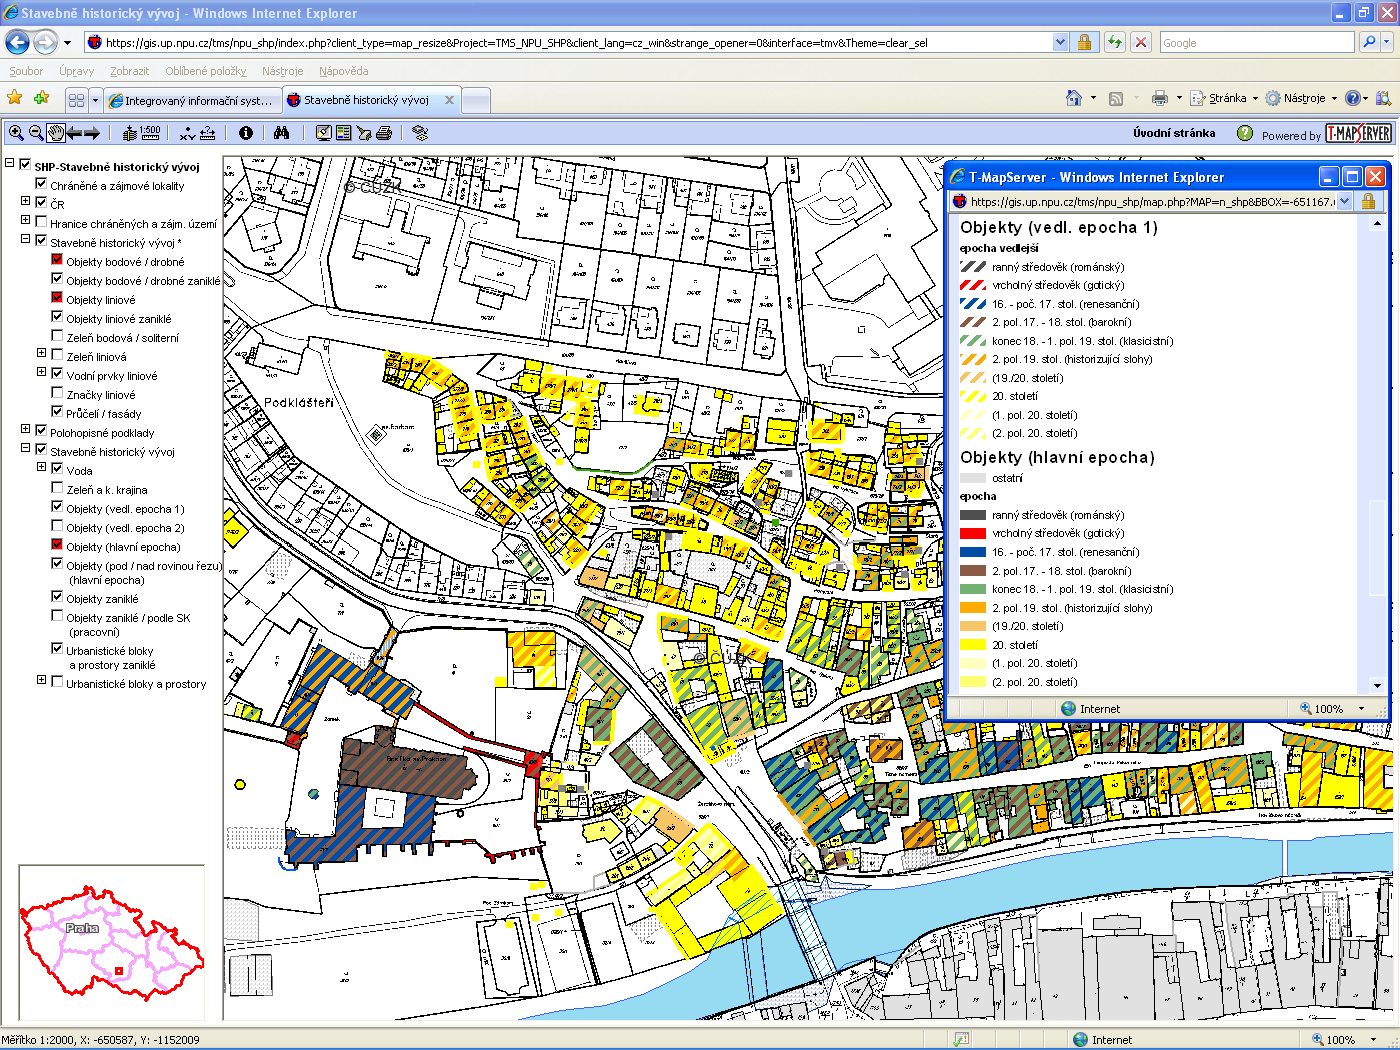 - SHP - Stavebně historický vývoj mapový projekt určený pro odborné pracovníky NPÚ.